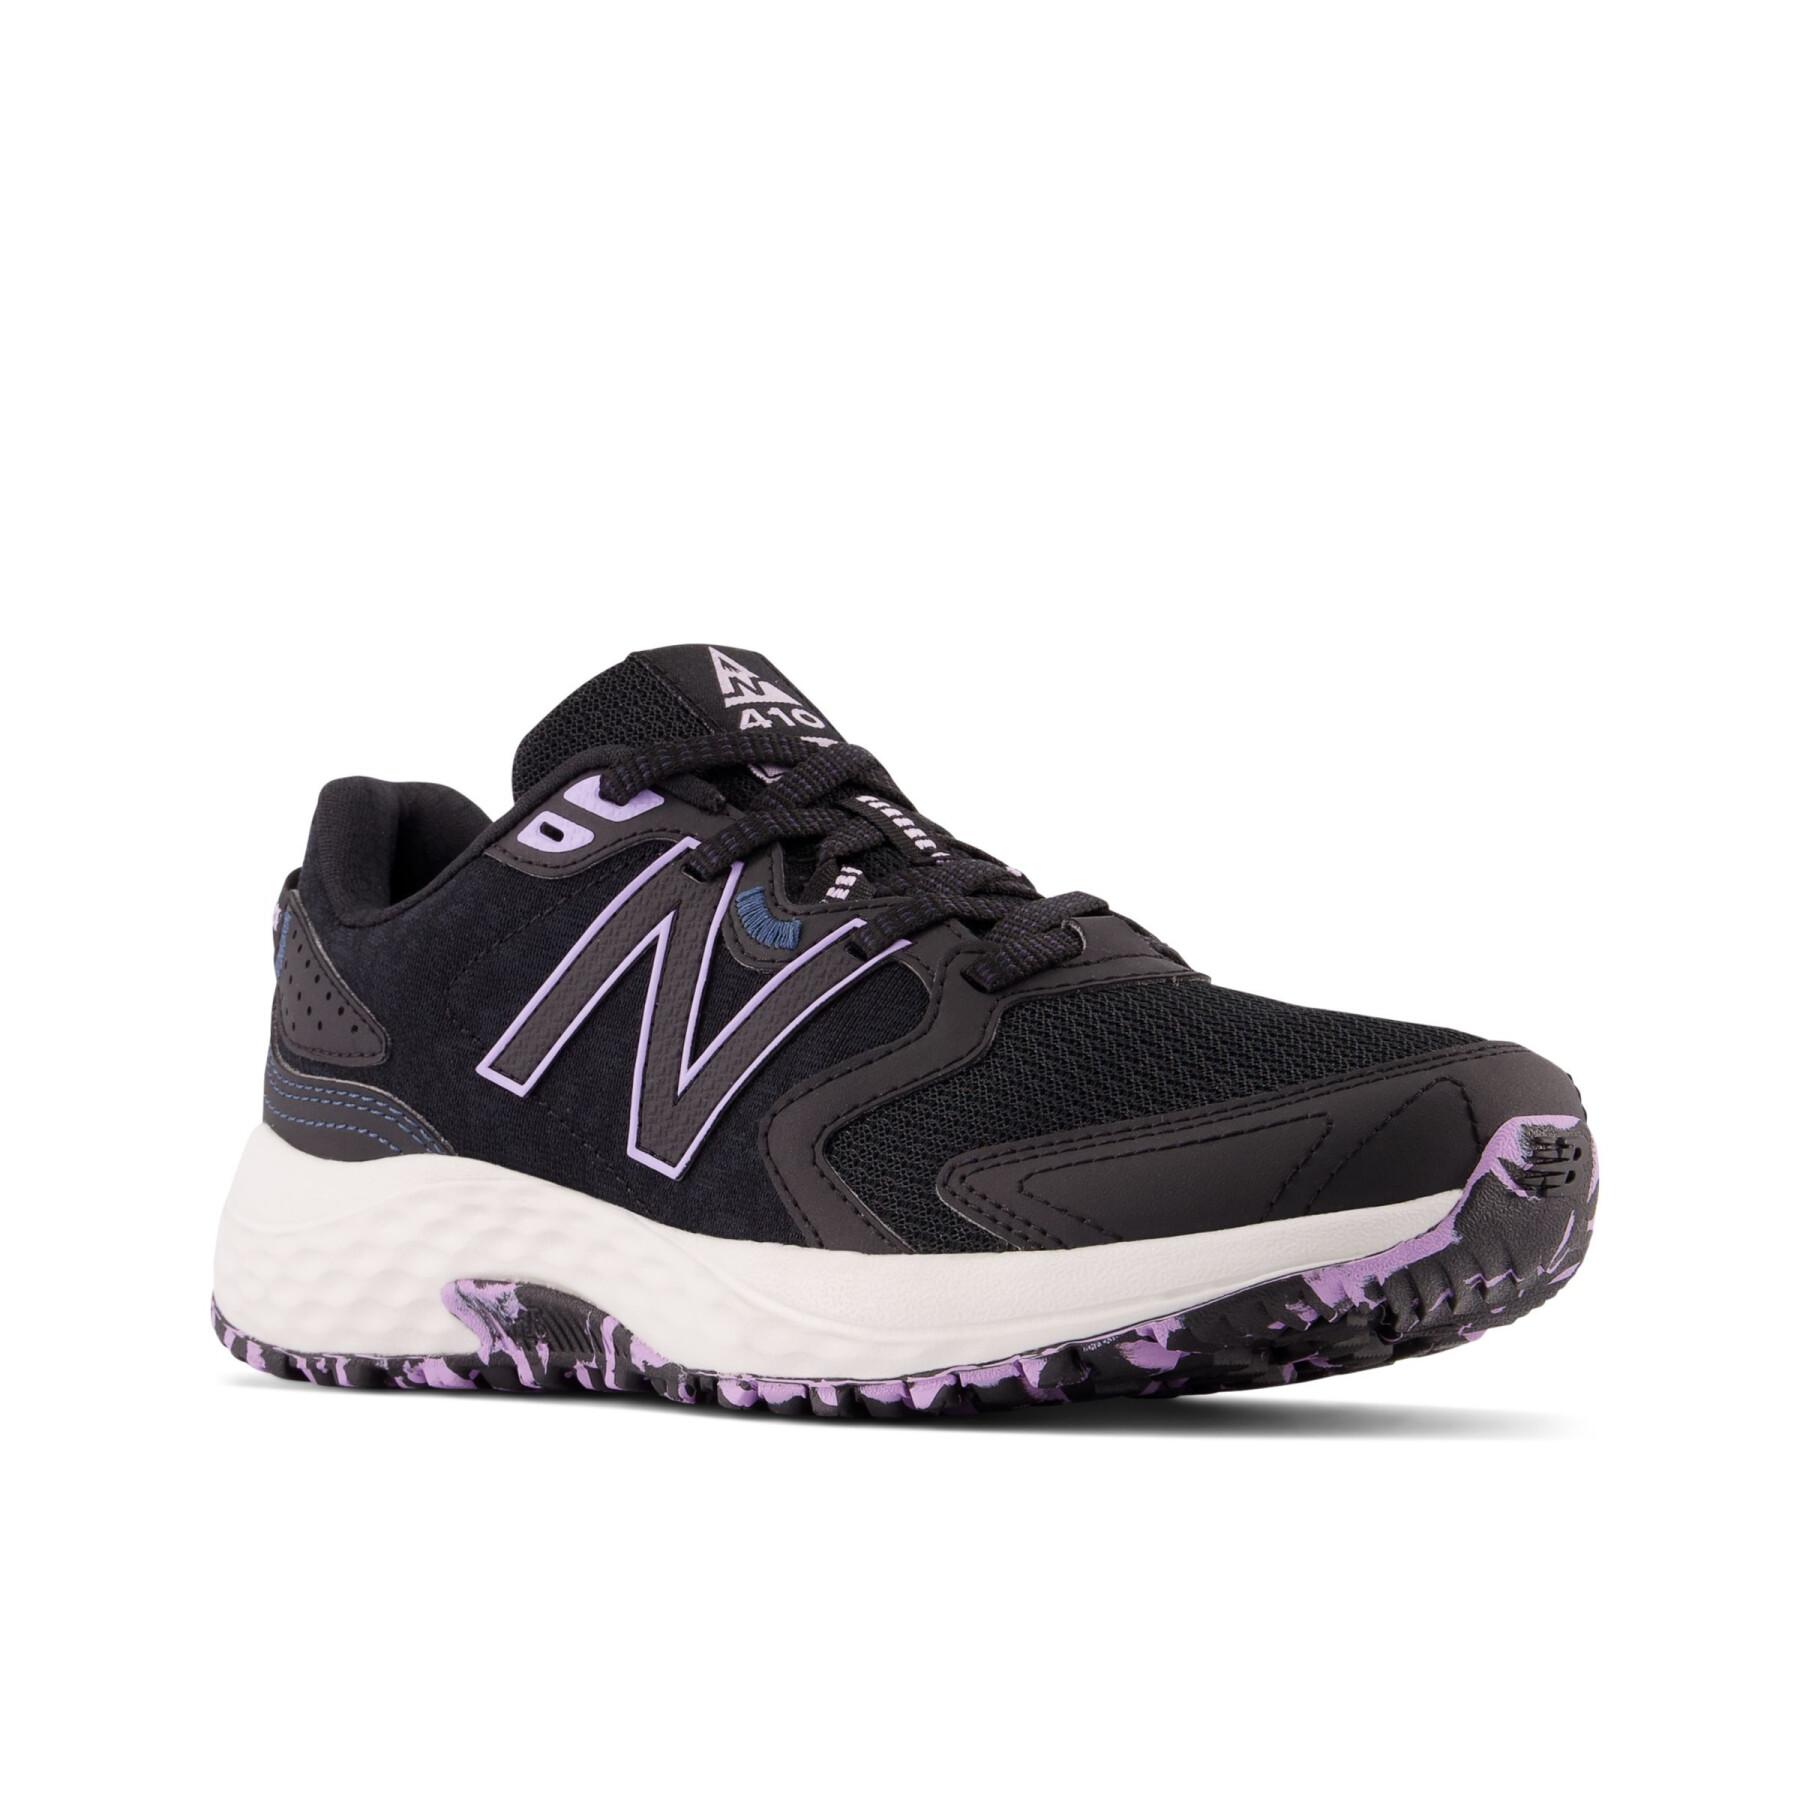 Chaussures de running femme New Balance 410v7